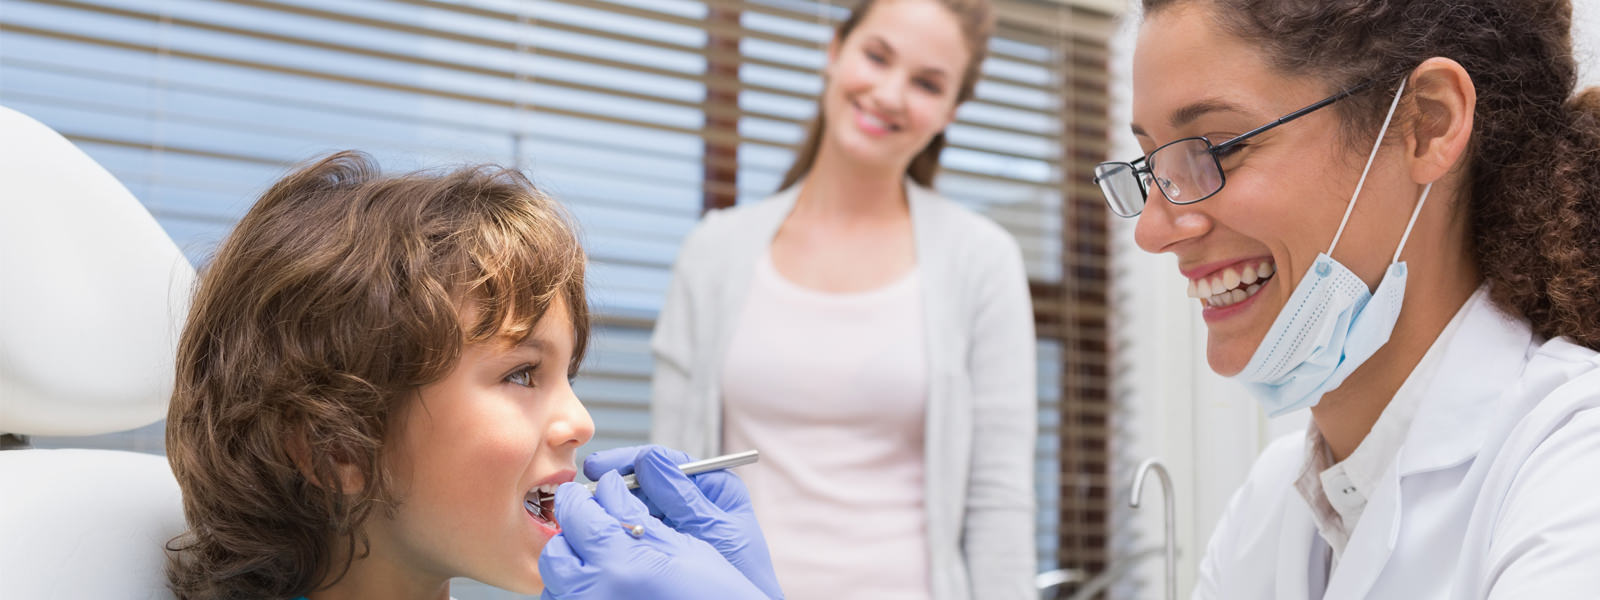 Kids First Dental Visit | Kids Care Dental and Orthodontics